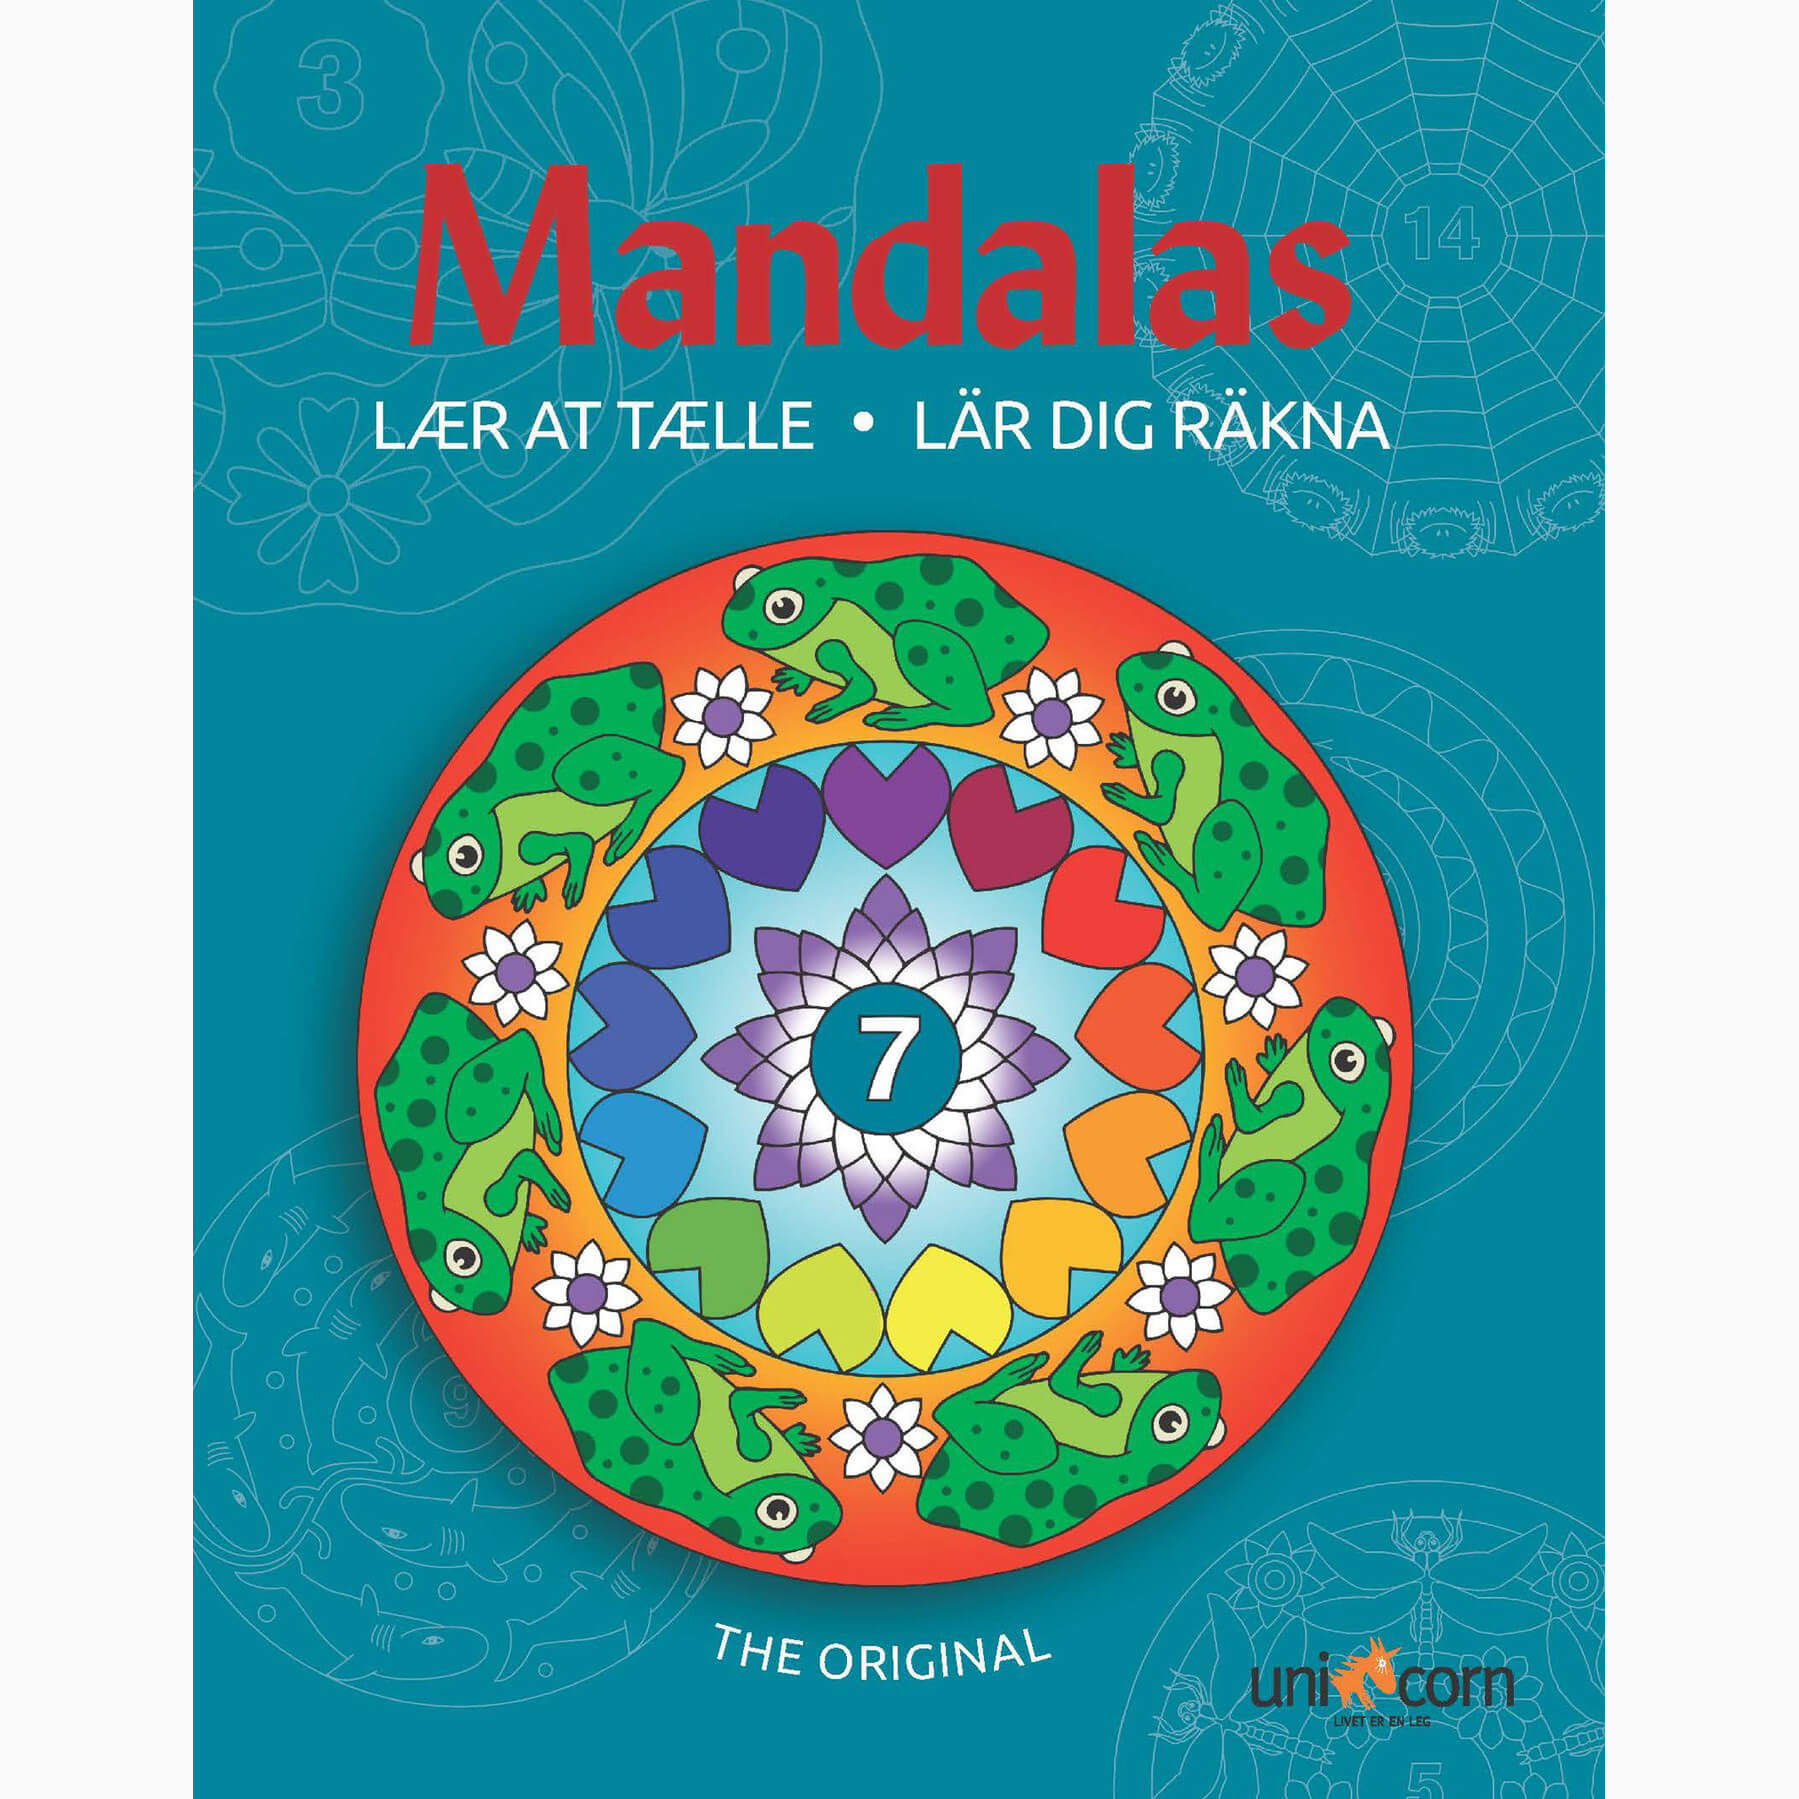 Mandalas - Lær at tælle med Mandalas